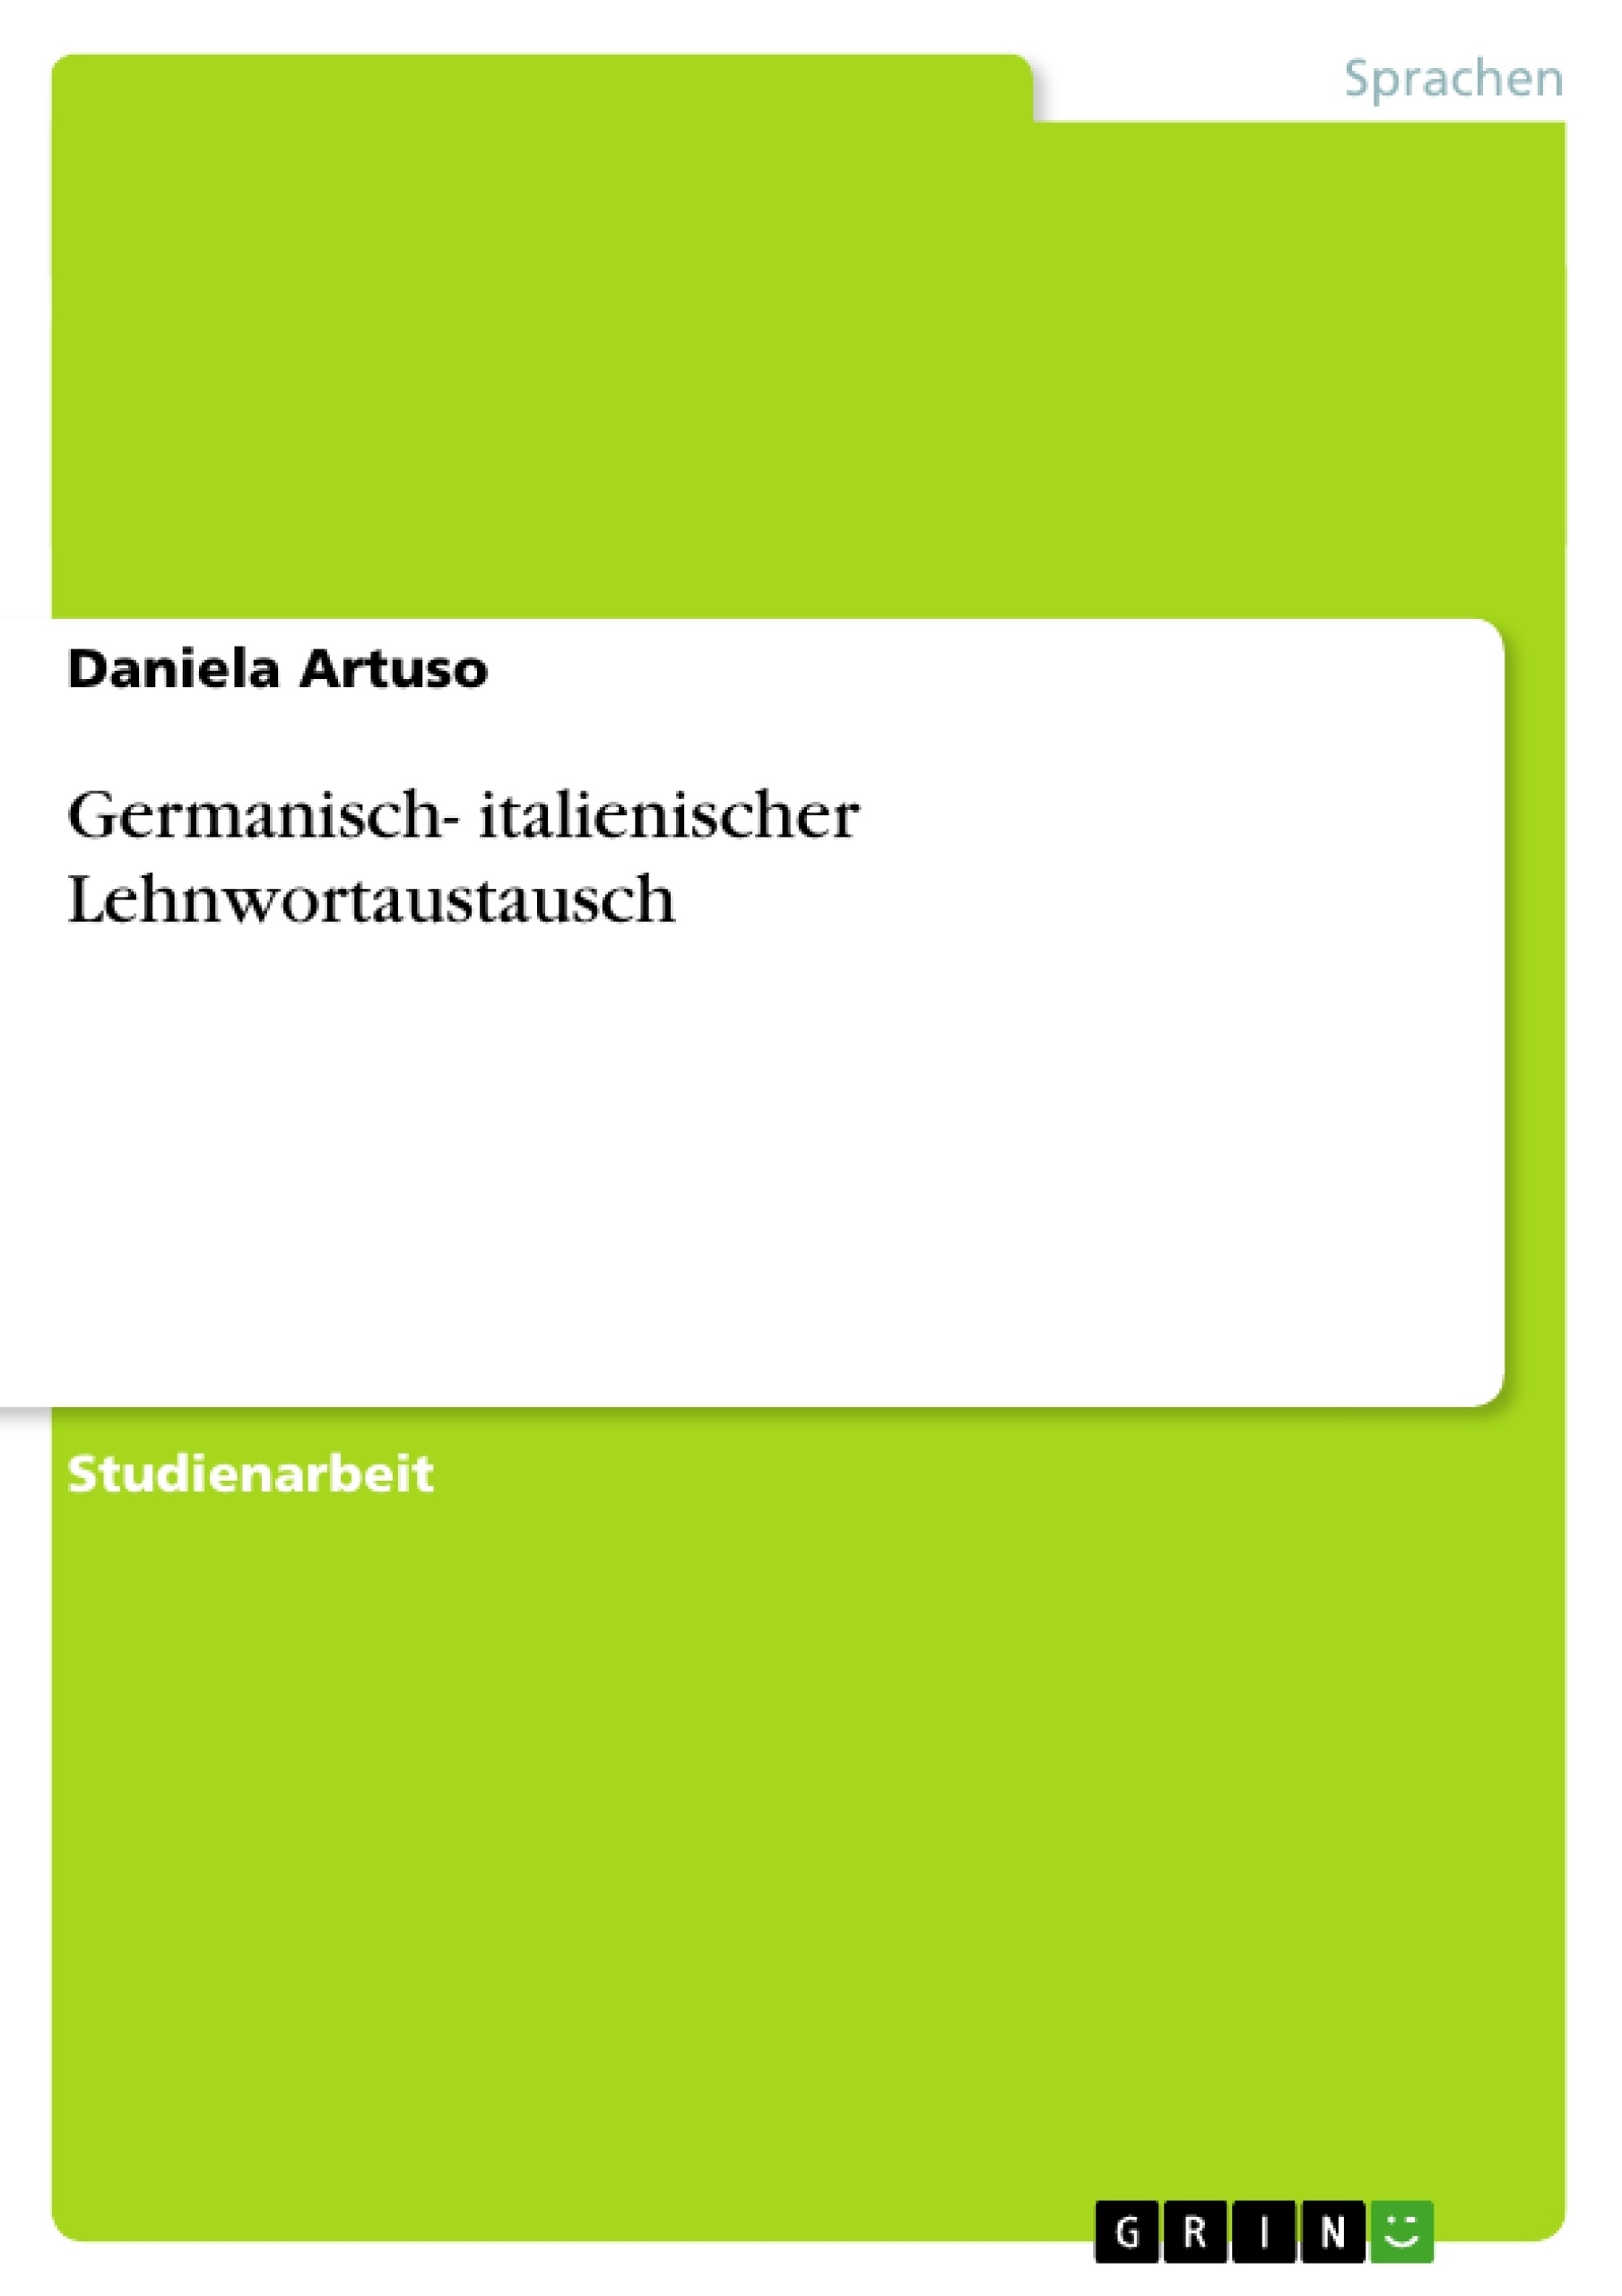 Title: Germanisch- italienischer Lehnwortaustausch